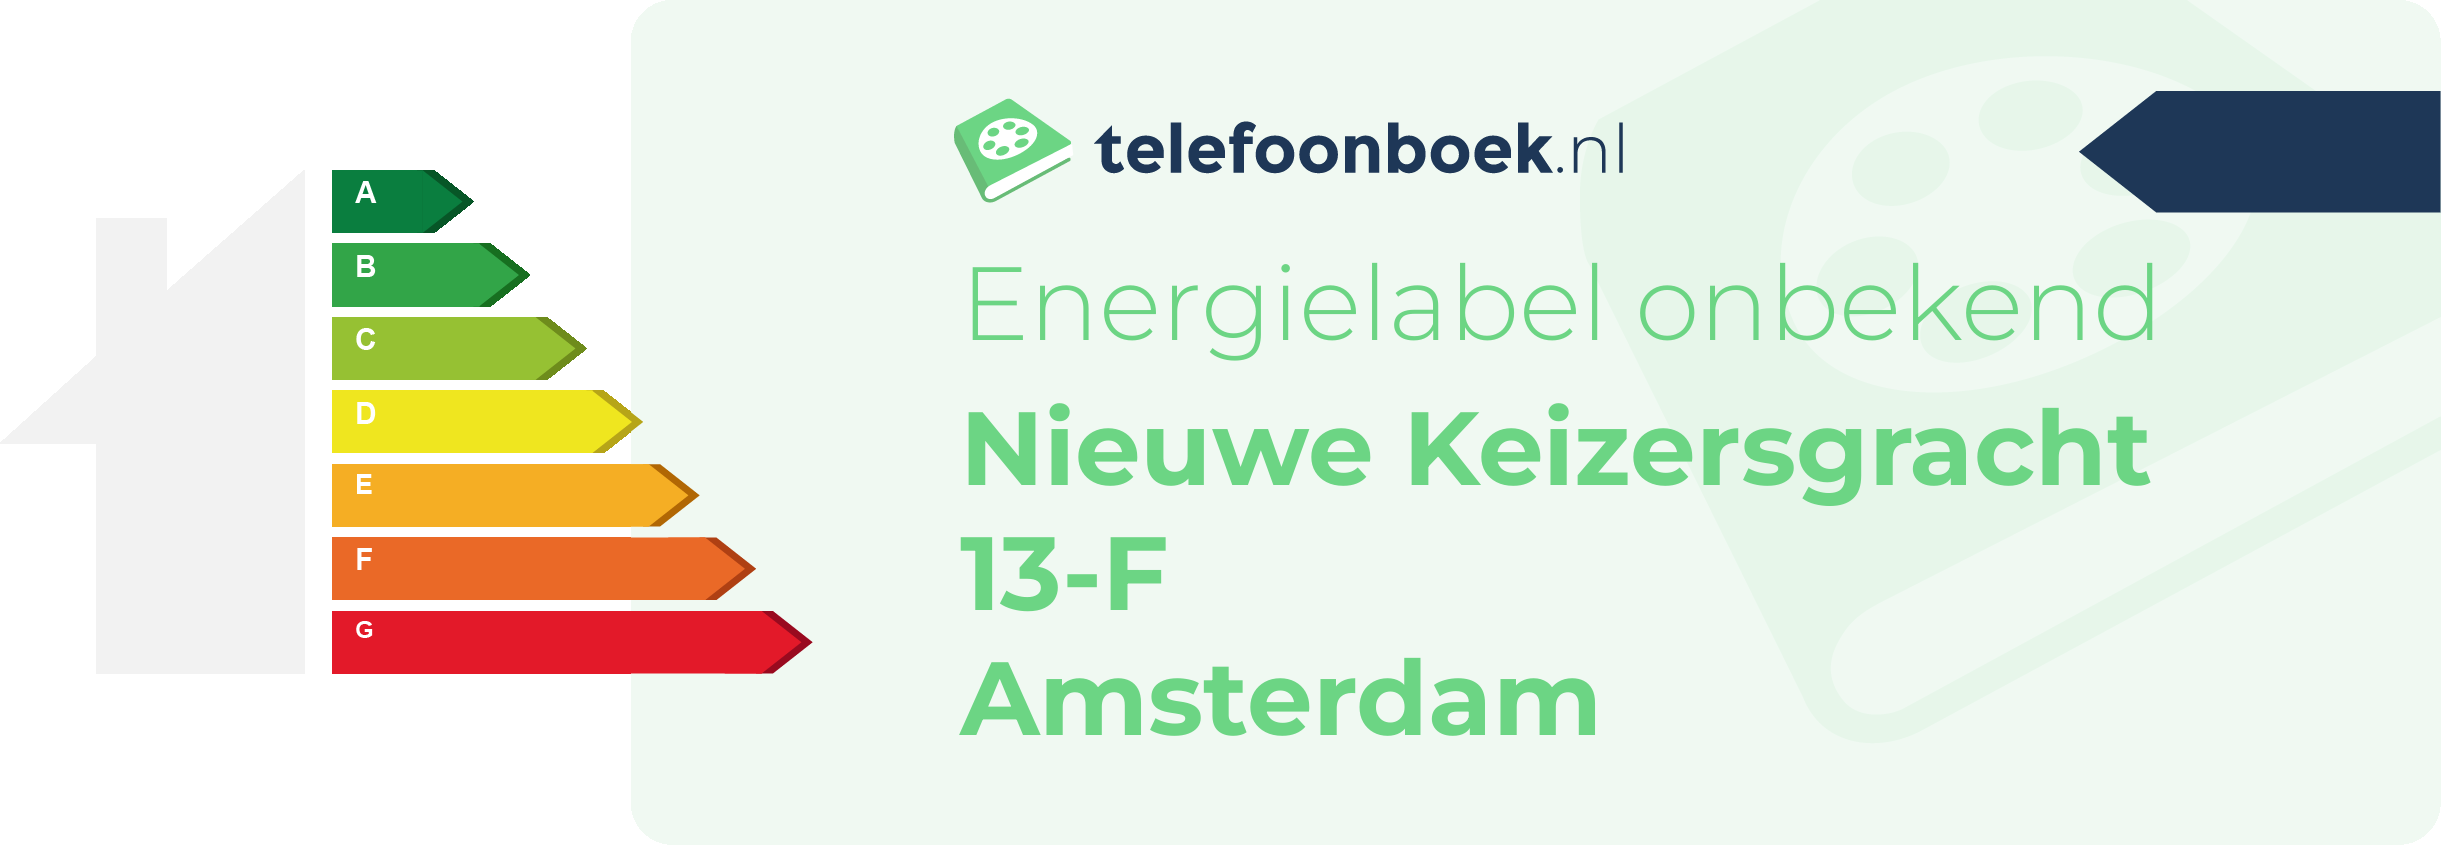 Energielabel Nieuwe Keizersgracht 13-F Amsterdam